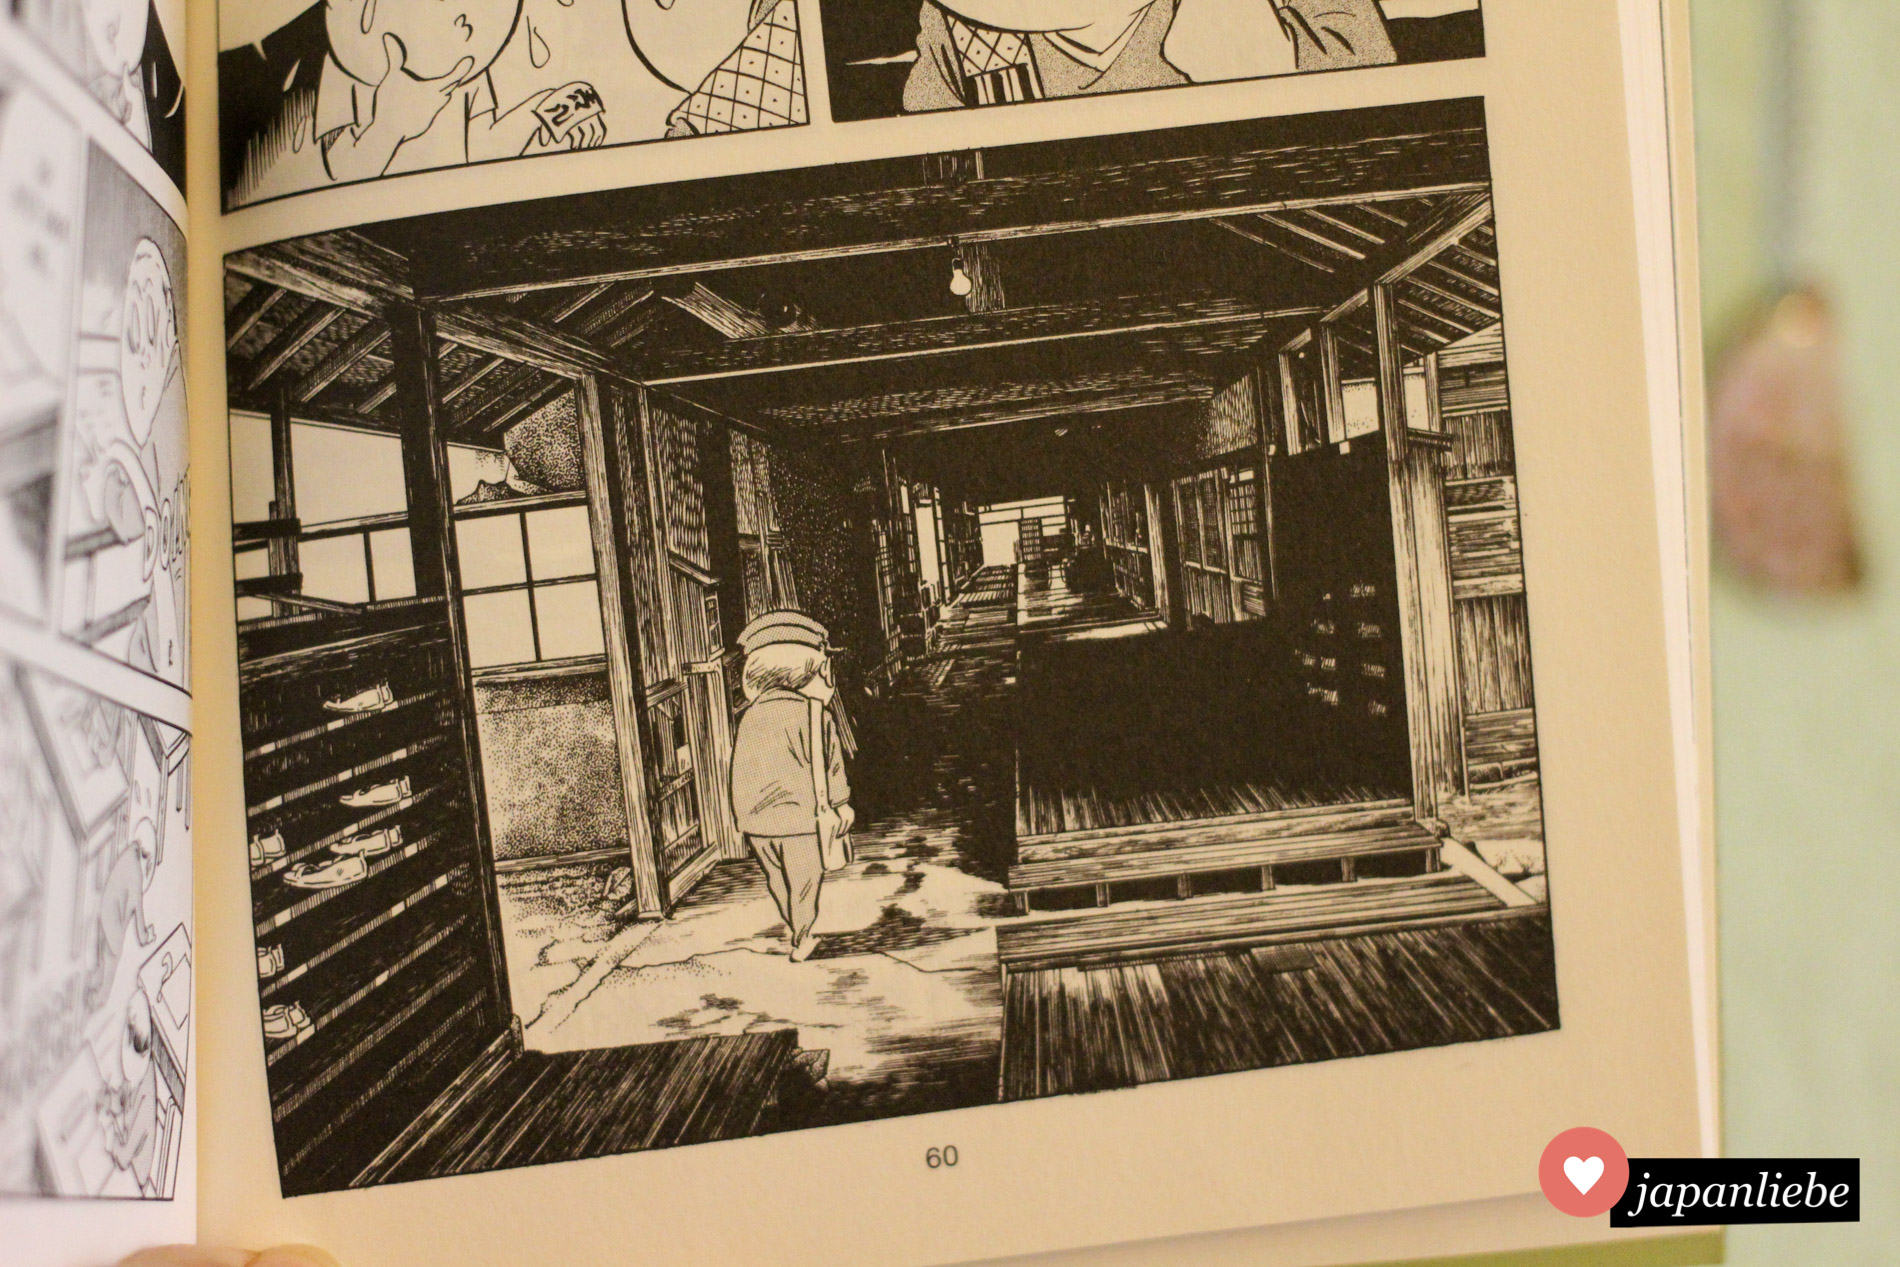 Die Zeichnungen in Shigeru Mizukis Manga "Tante NonNon" sind eine Mischung aus ulkigen Figuren und detailgetreuen Hintergründen.